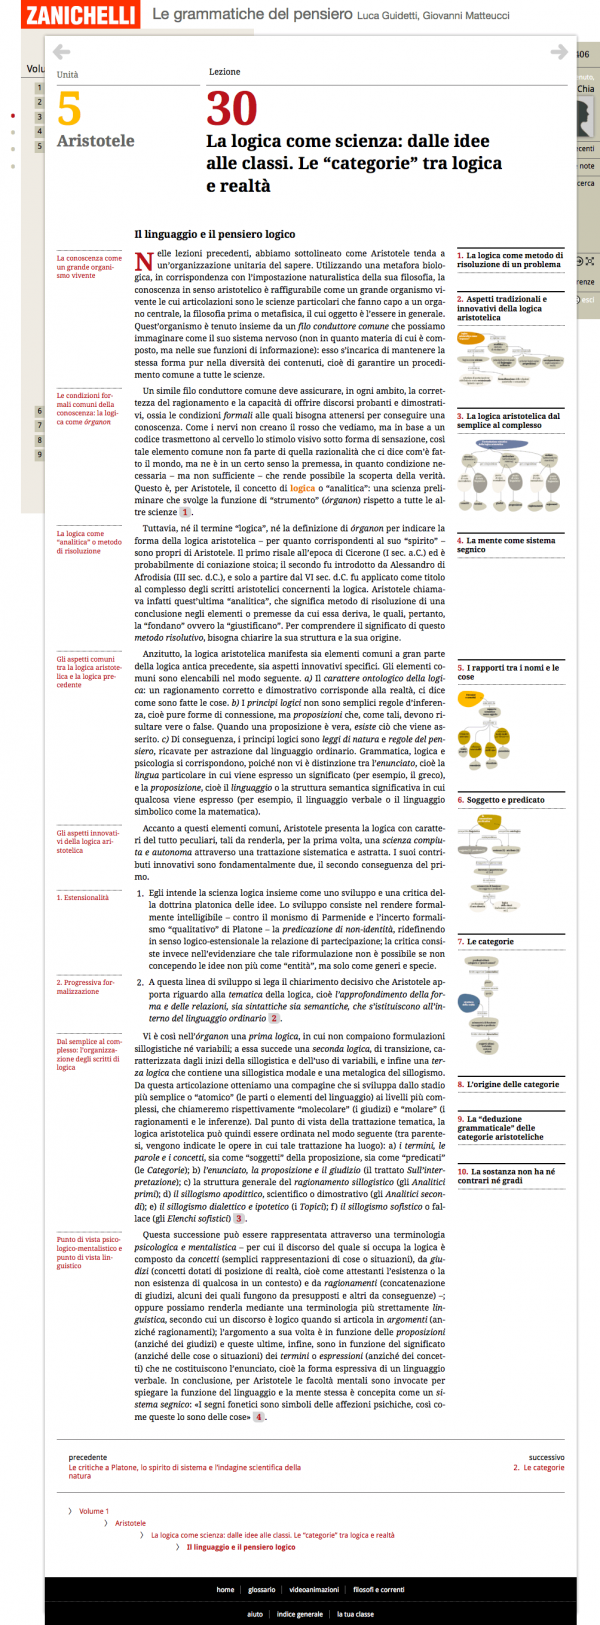 Interactive eBook "Le Grammatiche del Pensiero", Zanichelli